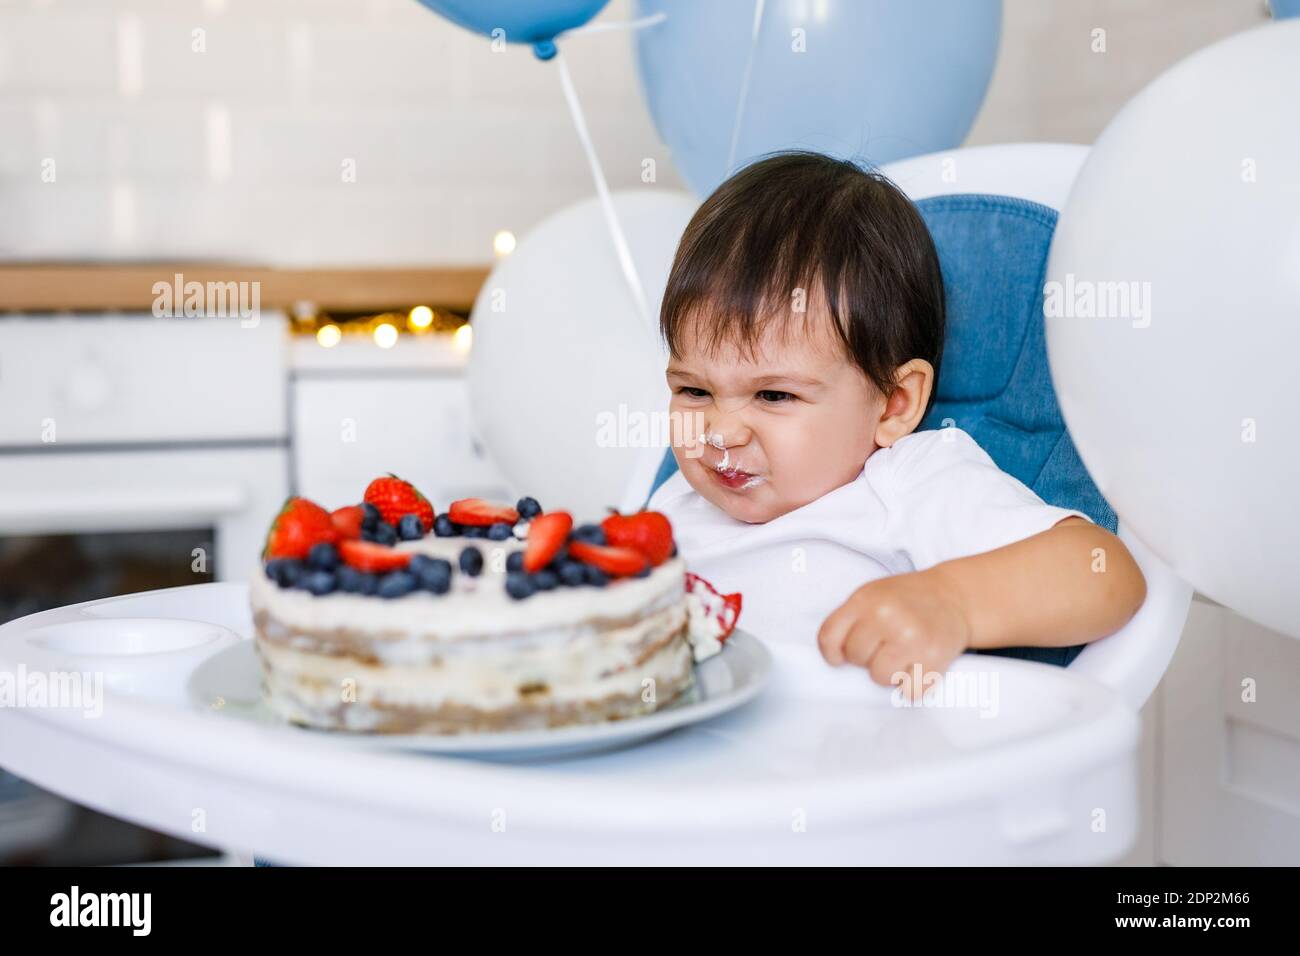 Kleiner Junge, der in einem Hochstuhl in der weißen Küche sitzt Und Verkostung ersten Jahr Kuchen mit Früchten auf Hintergrund mit Ballons Stockfoto